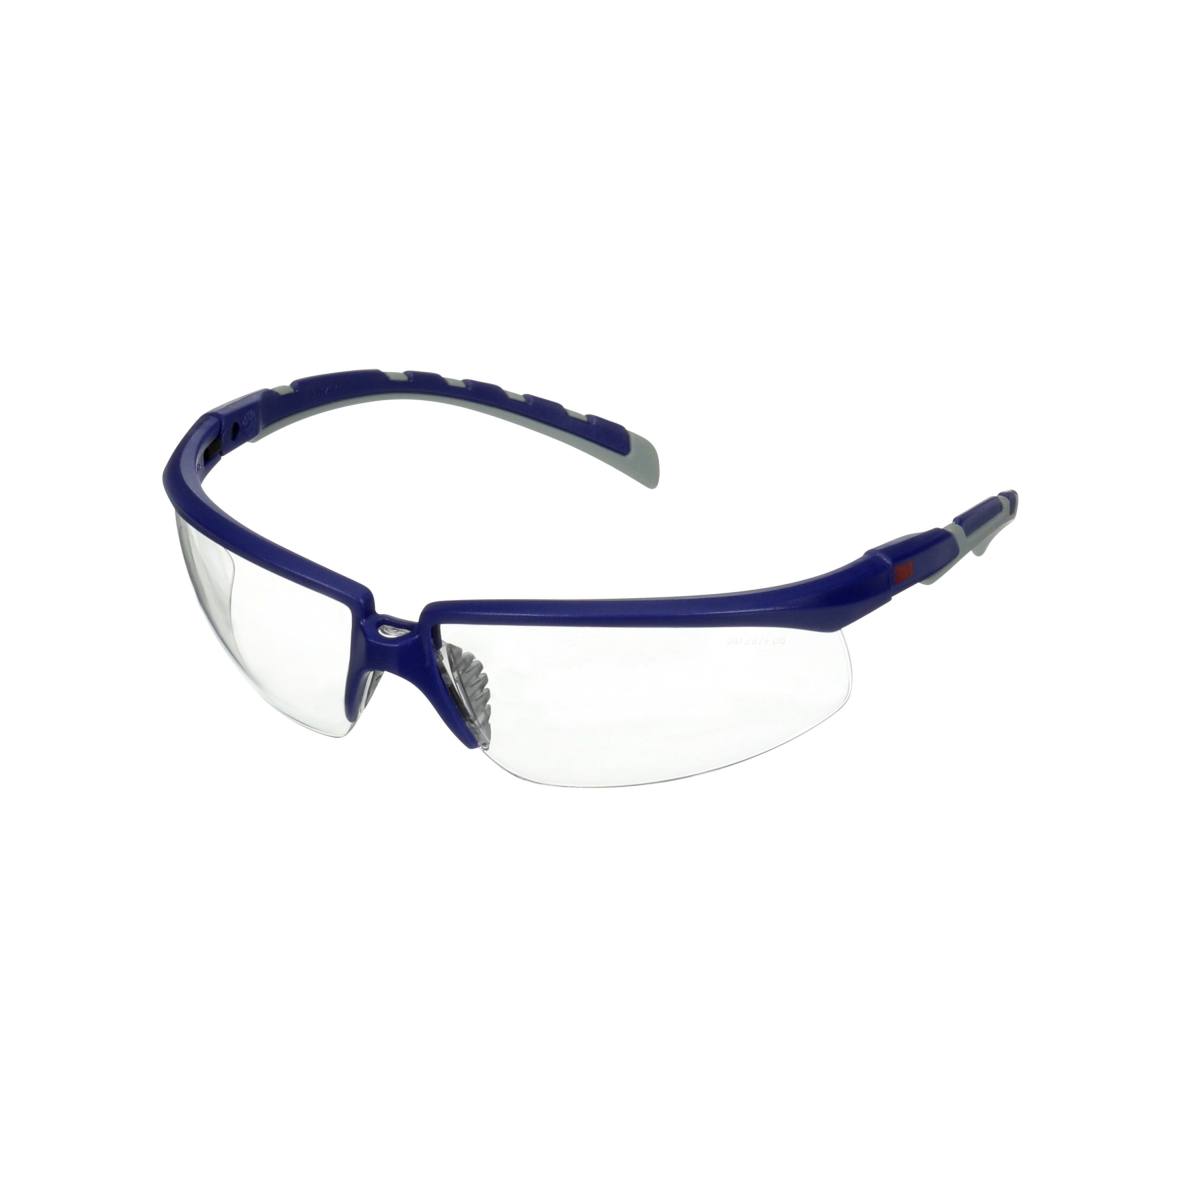 3M Solus 2000 lunettes de protection, branches bleues/grises, anti-rayures+ (K), écran incolore, angle réglable, S2001ASP-BLU-EU